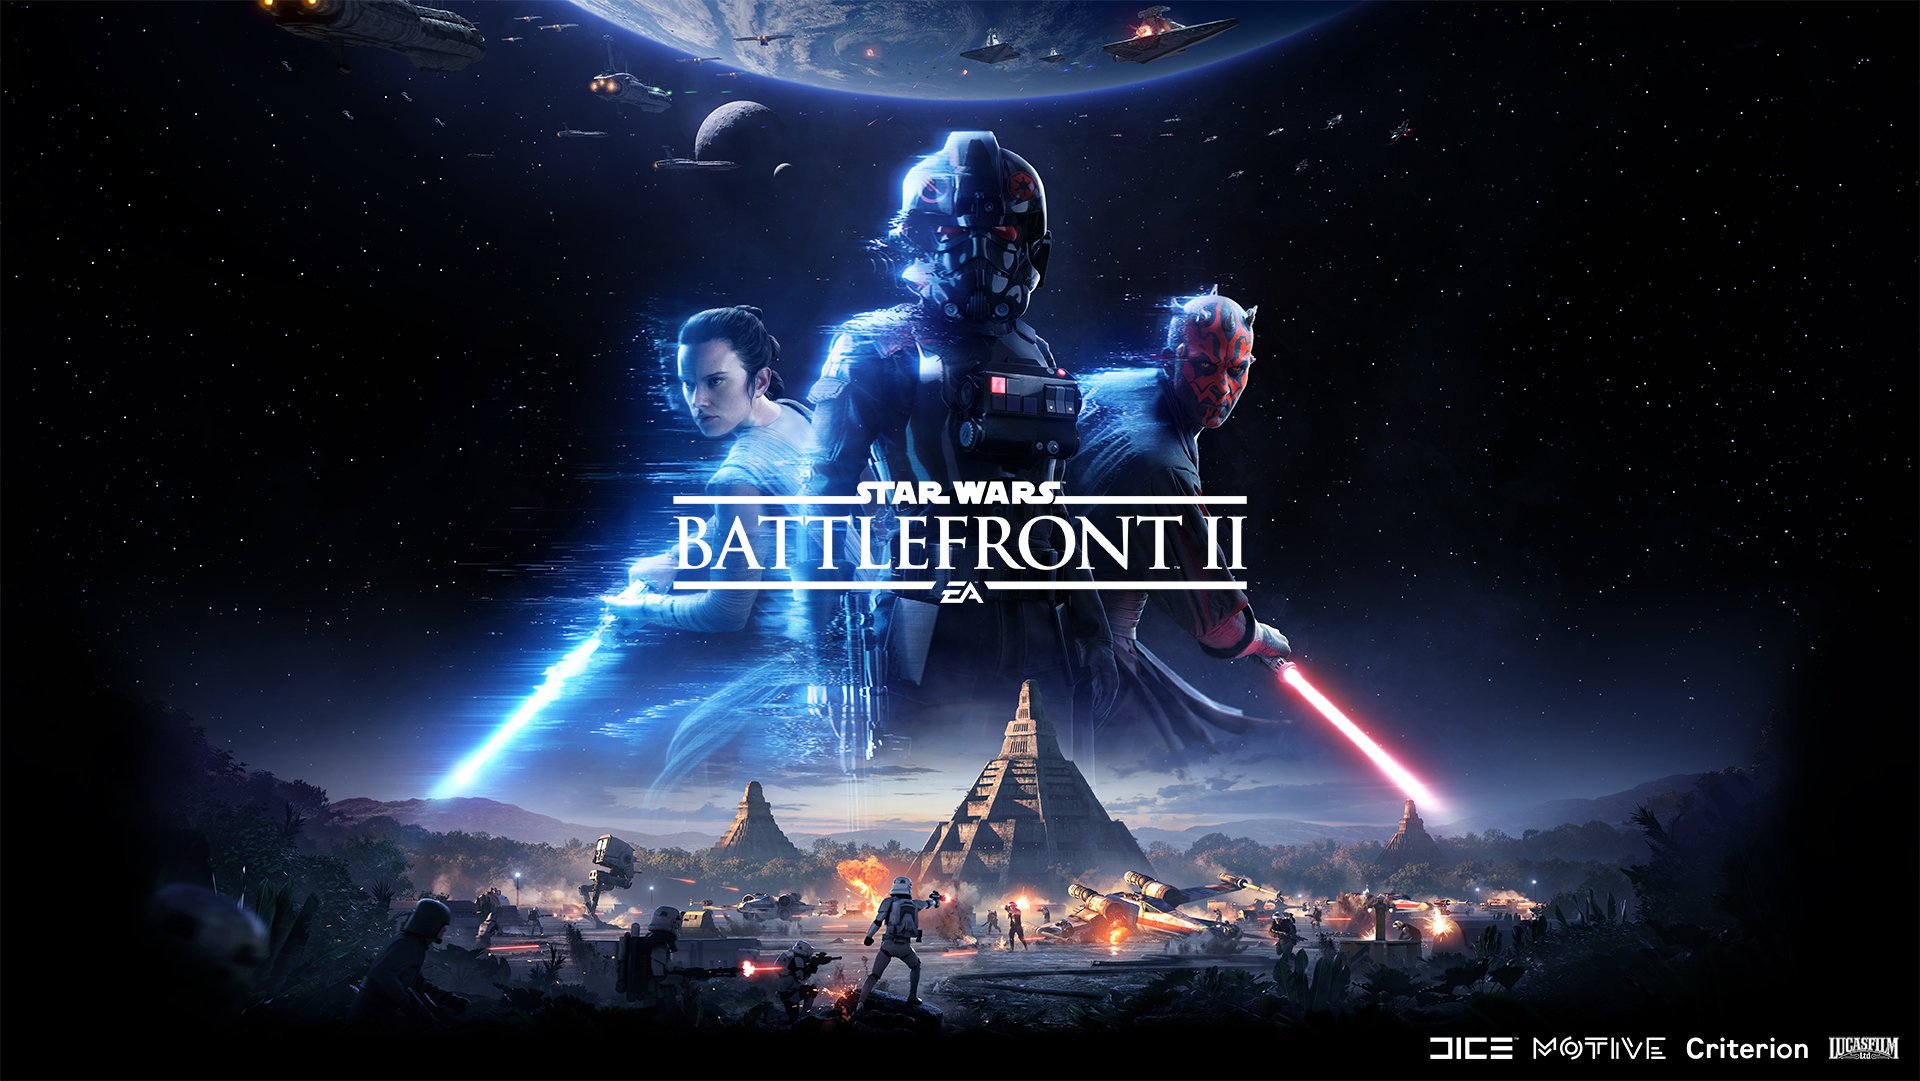 EAの公式回答がギネス世界記録「もっともフォーラムで低評価を受けたコメント」に認定、『Star Wars Battlefront II』ルートボックス騒動に対する返答で_002